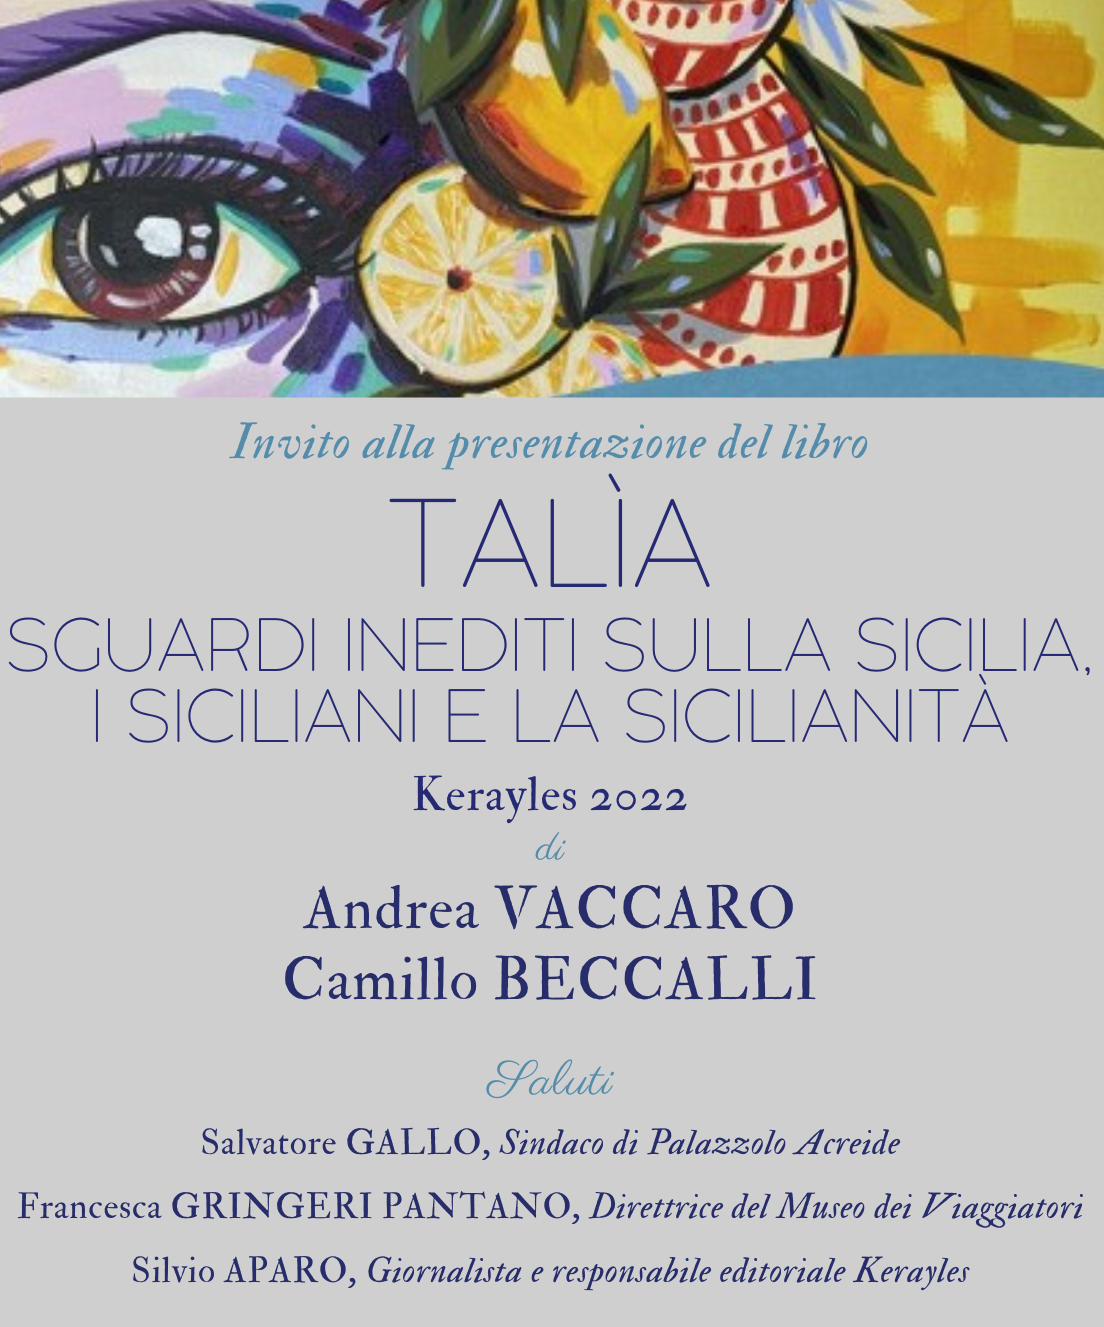 Palazzolo, al Museo dei Viaggiatori si presenta domenica 11 il libro "Talìa"